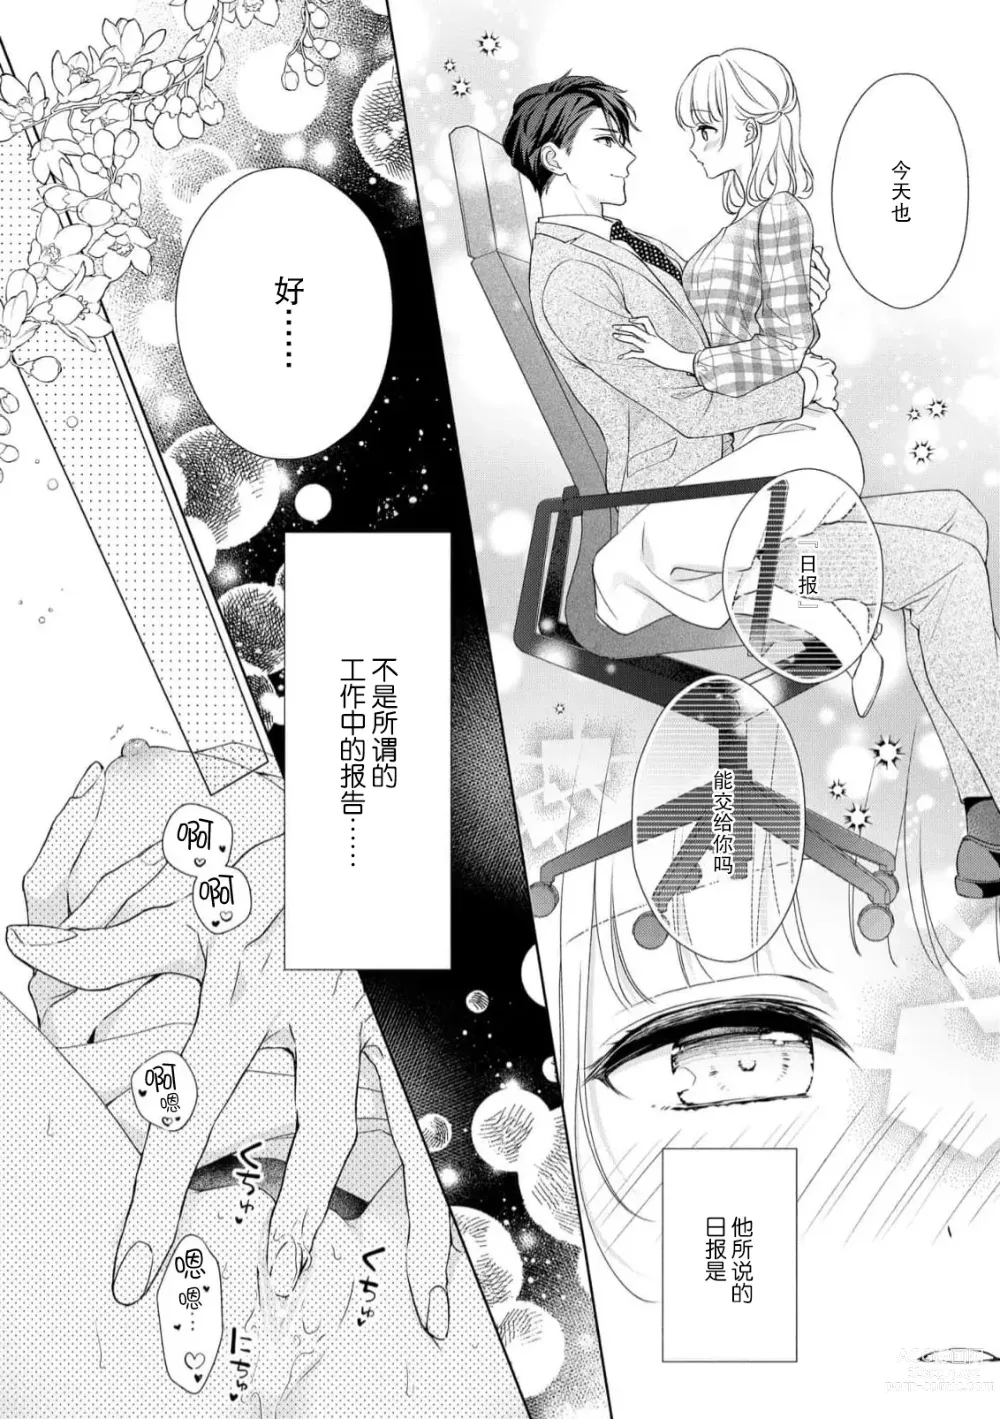 Page 11 of manga 宠爱社长贪恋我 ~用甘甜的毒将深处也融化~